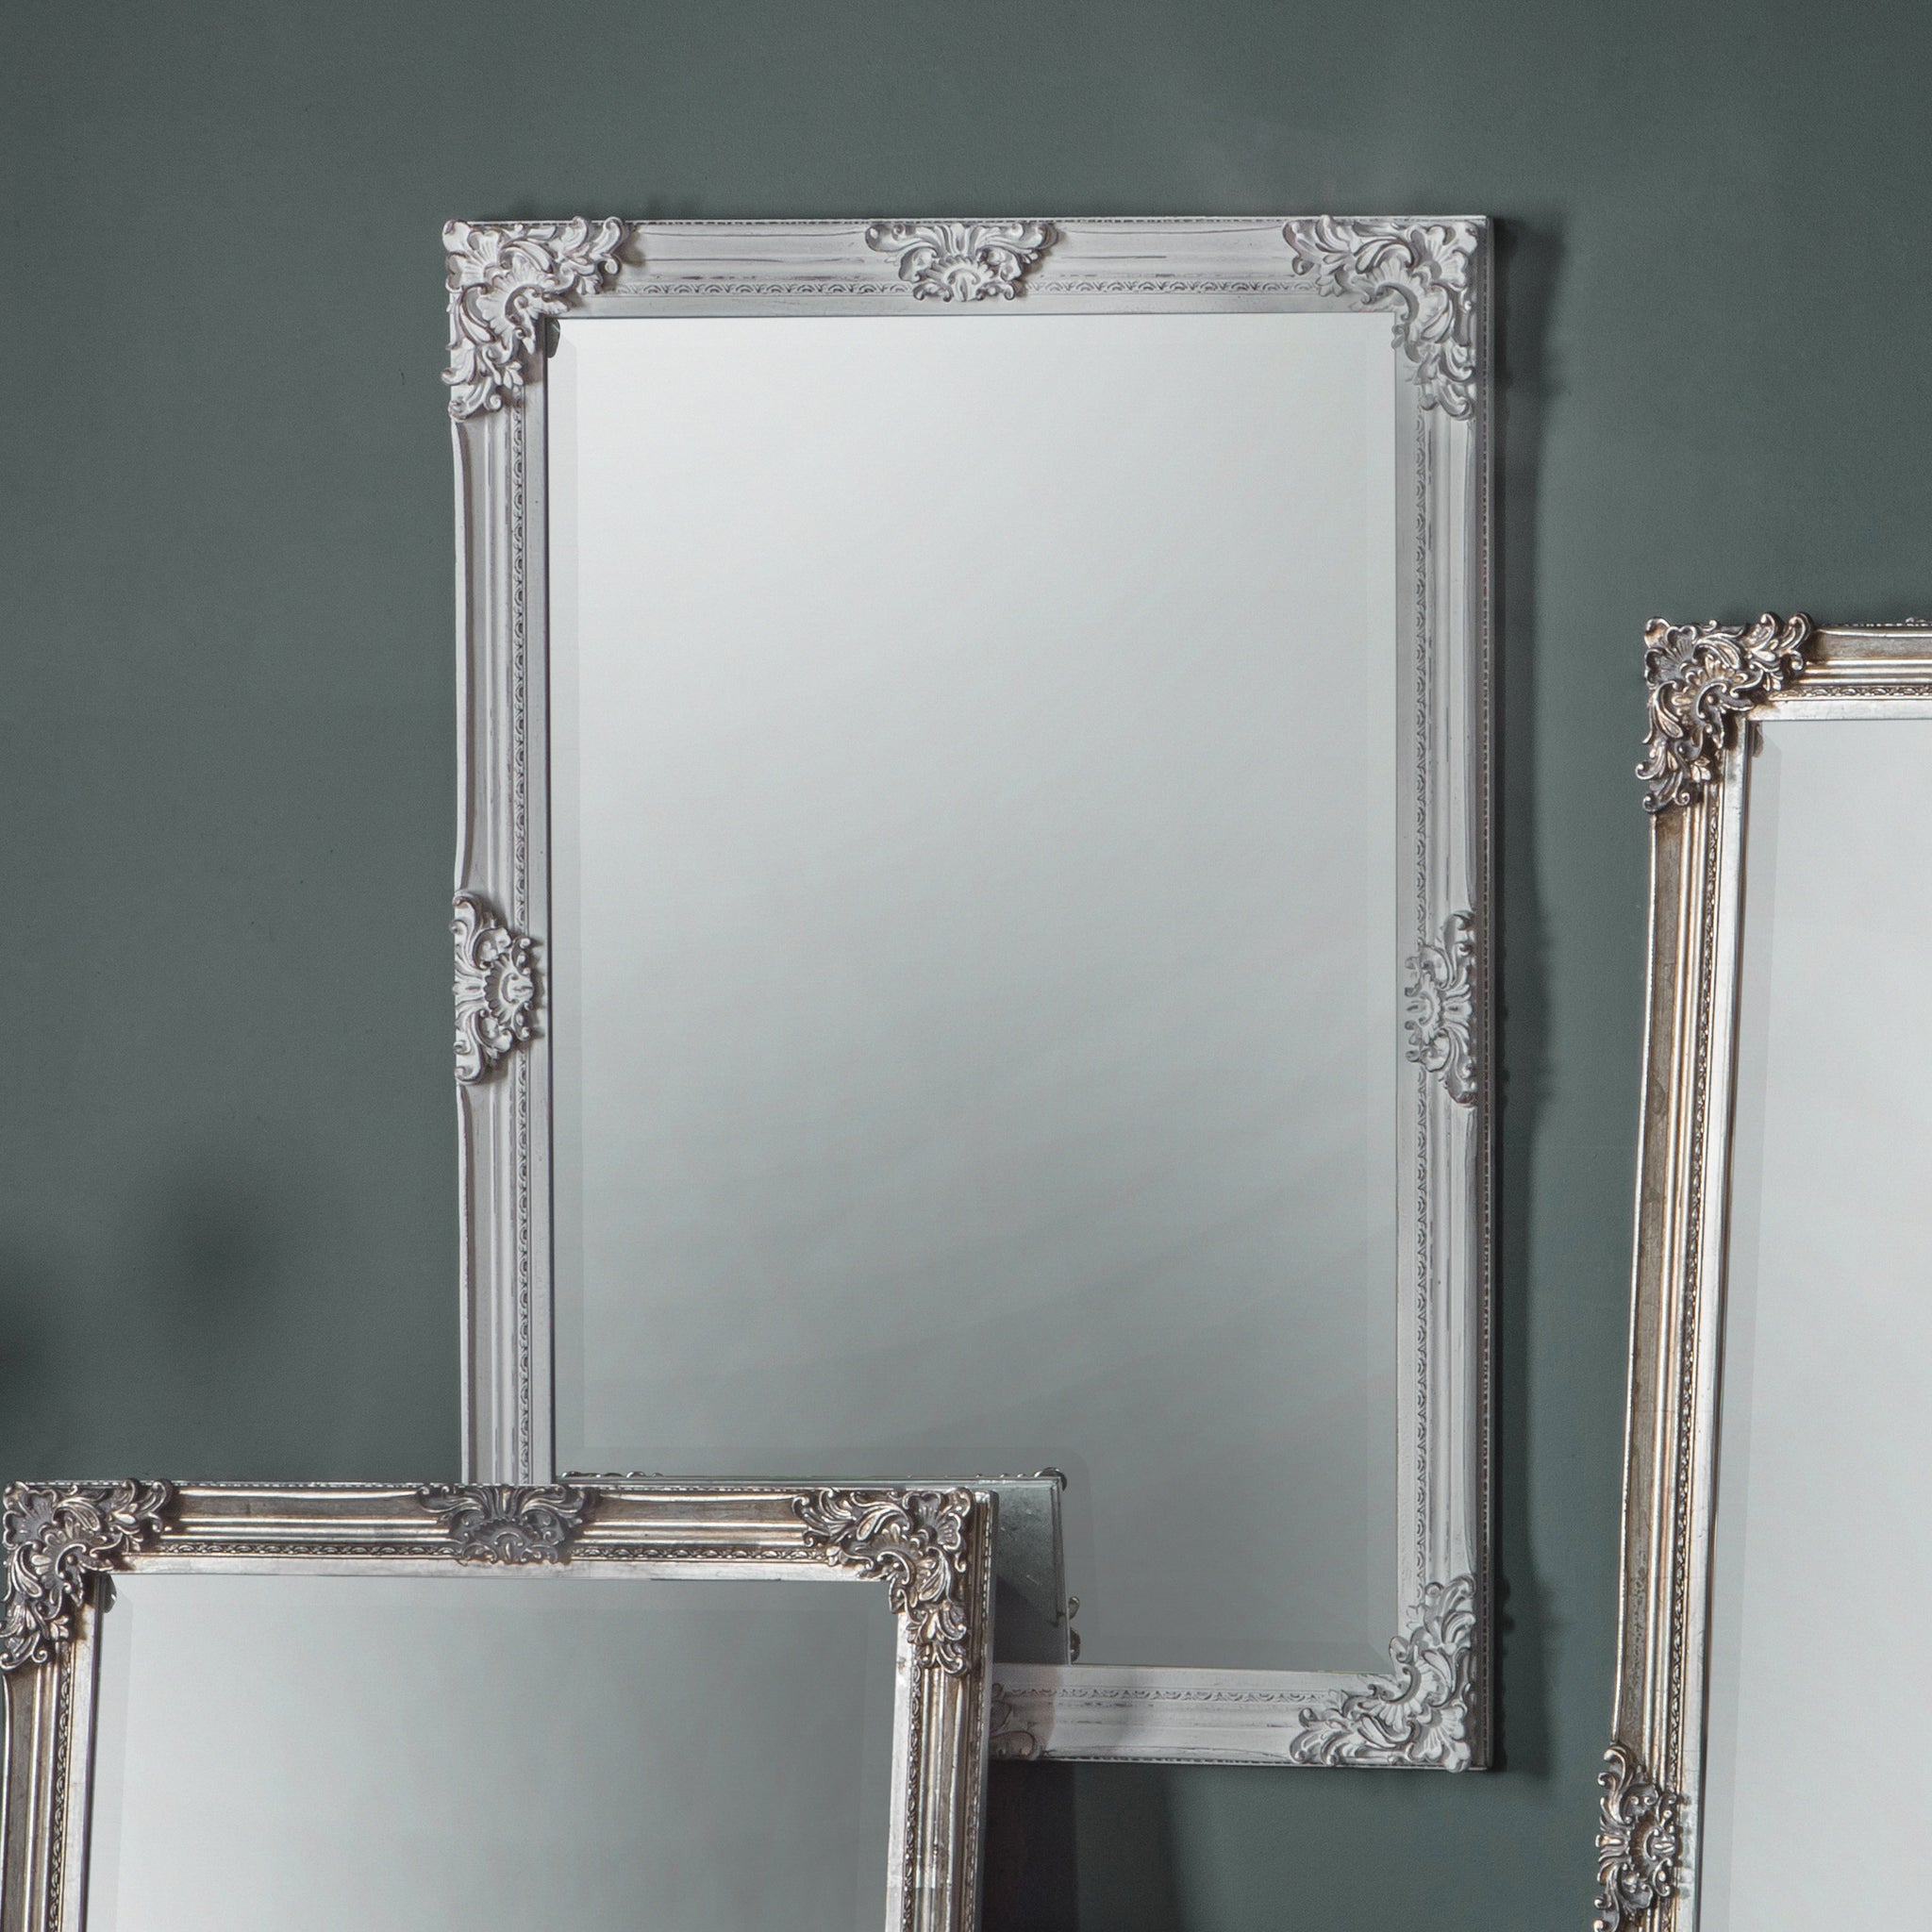 Raiph Rectangle Mirror Antique White